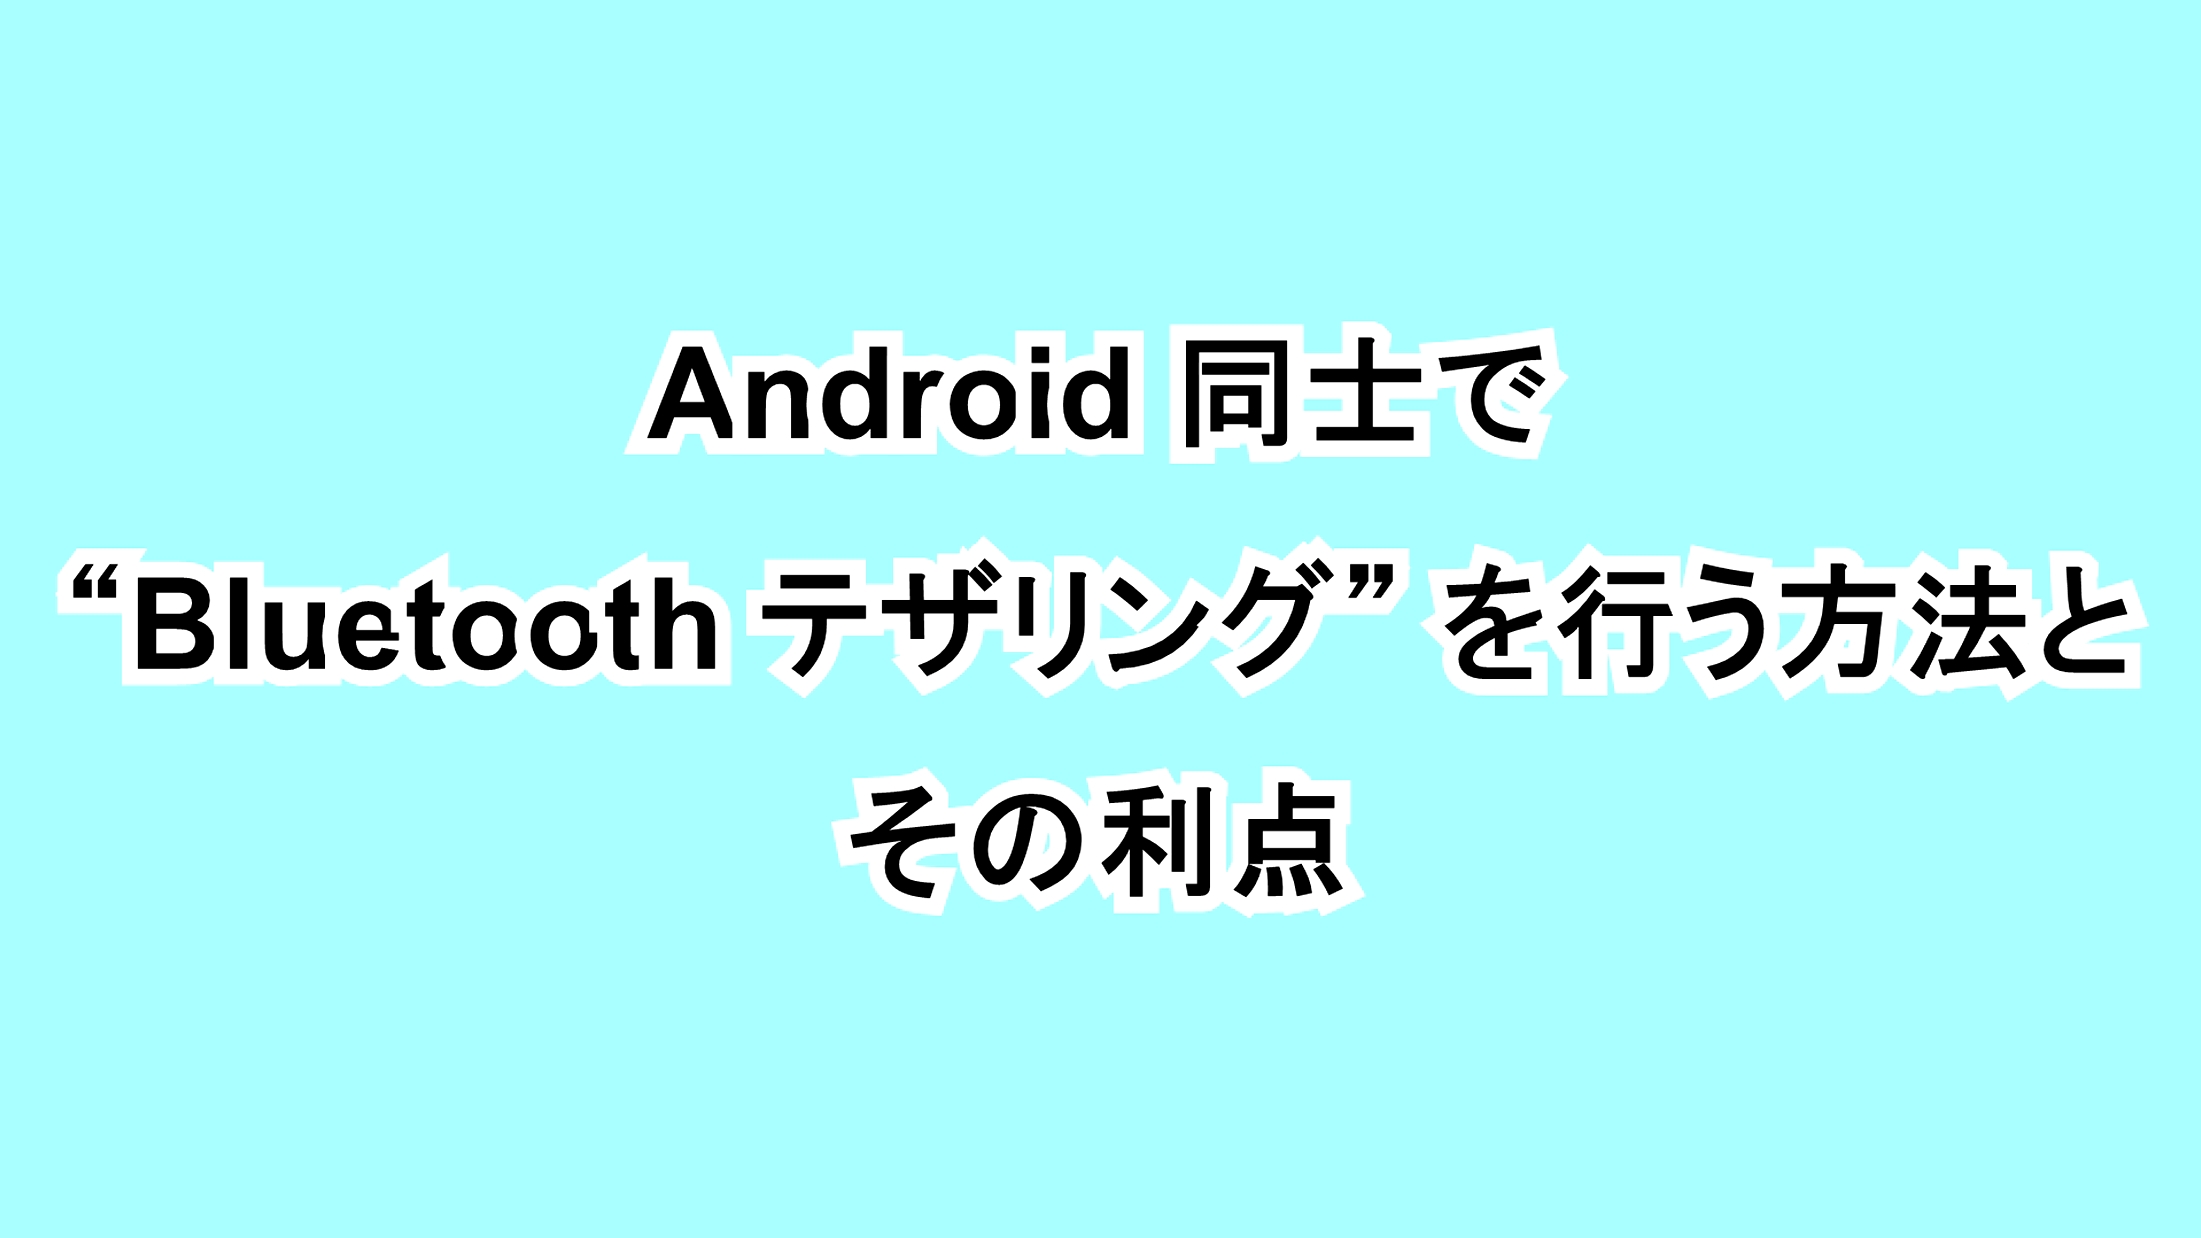 Android同士で“Bluetooth テザリング”を行う方法とその利点